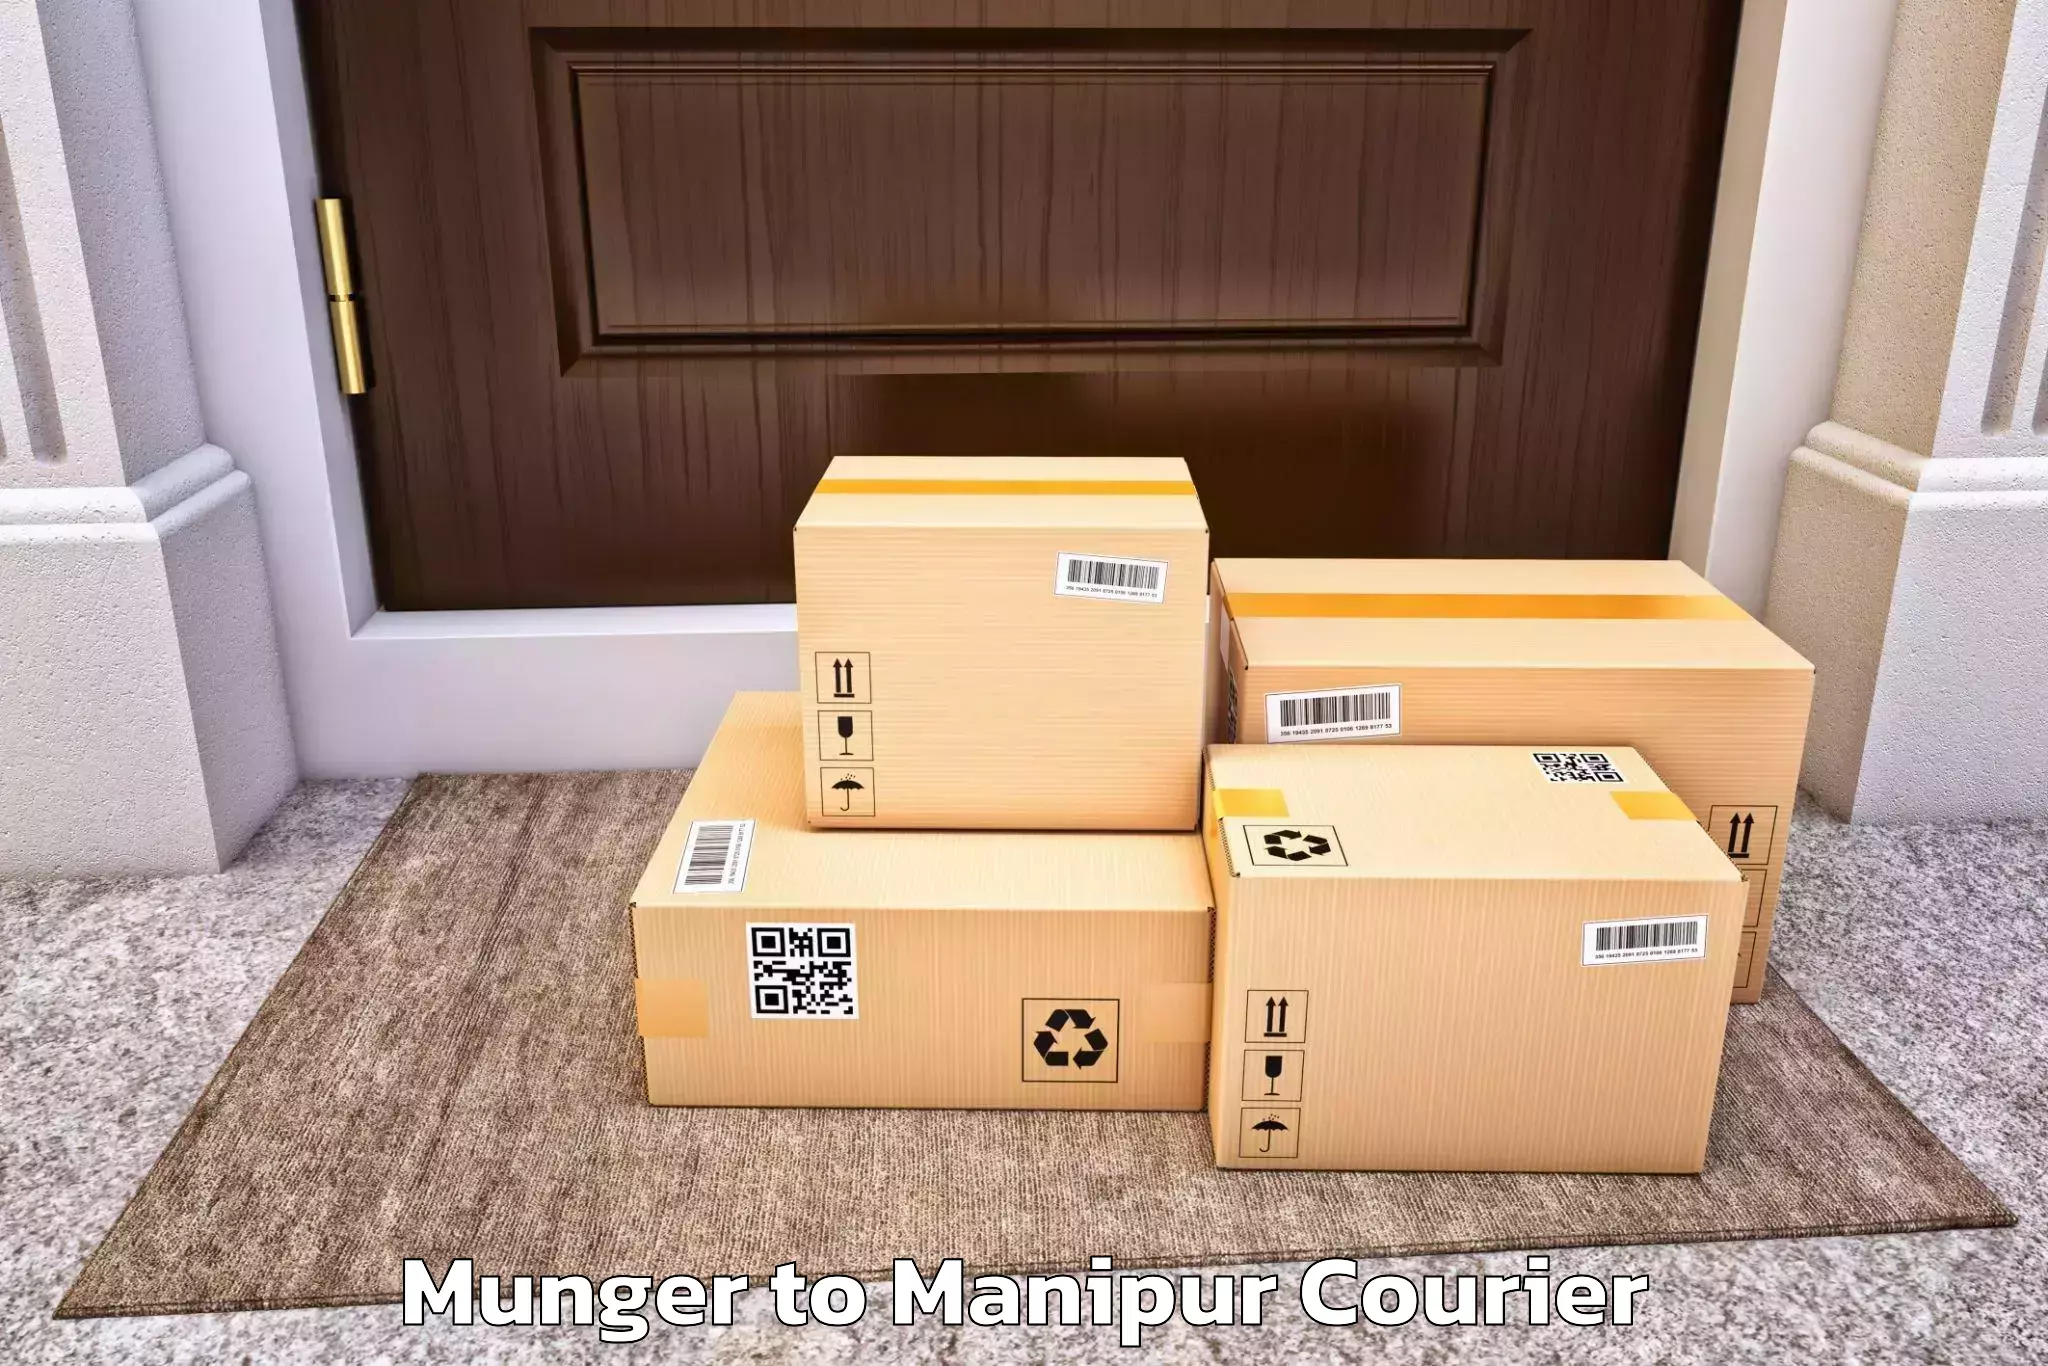 Stress-free moving Munger to Manipur